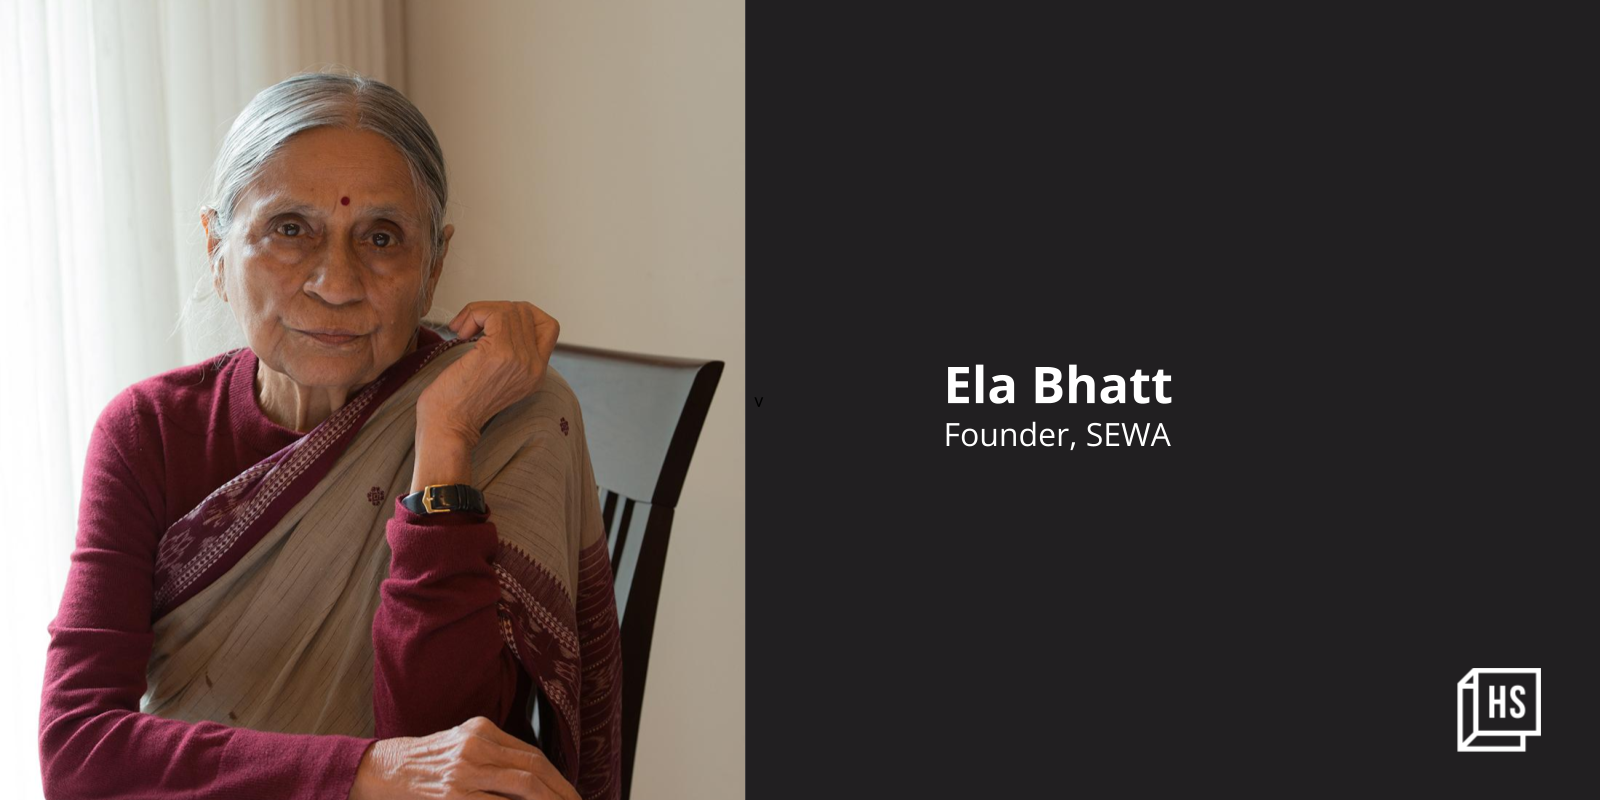 Women's rights activist, SEWA founder Ela Bhatt passes away

